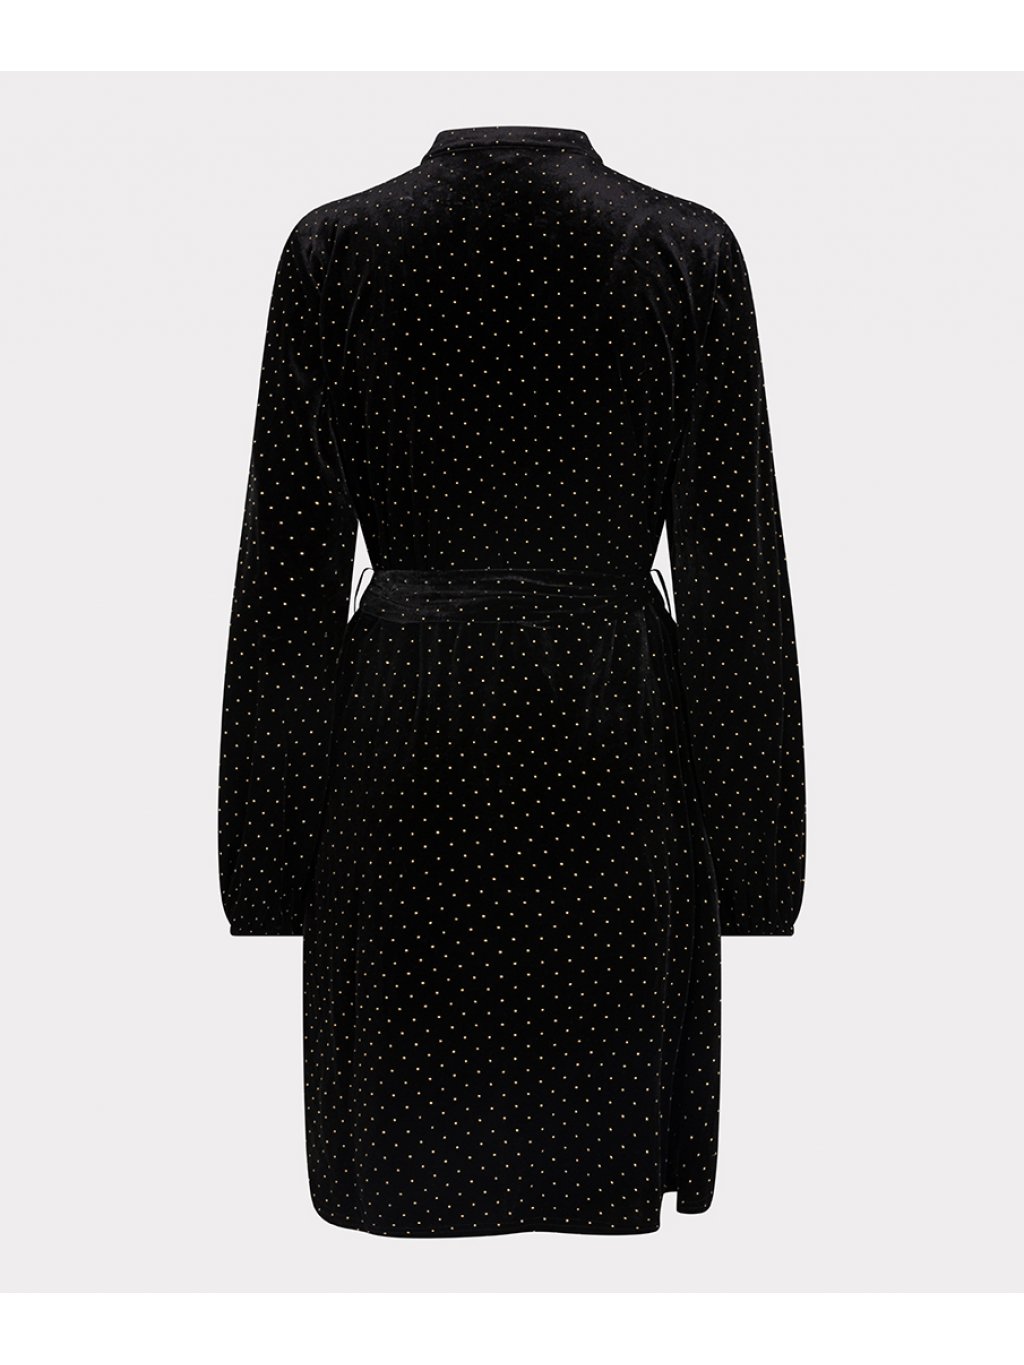 Šaty Esqualo 5700 černé sametové s kovovým puntíkem